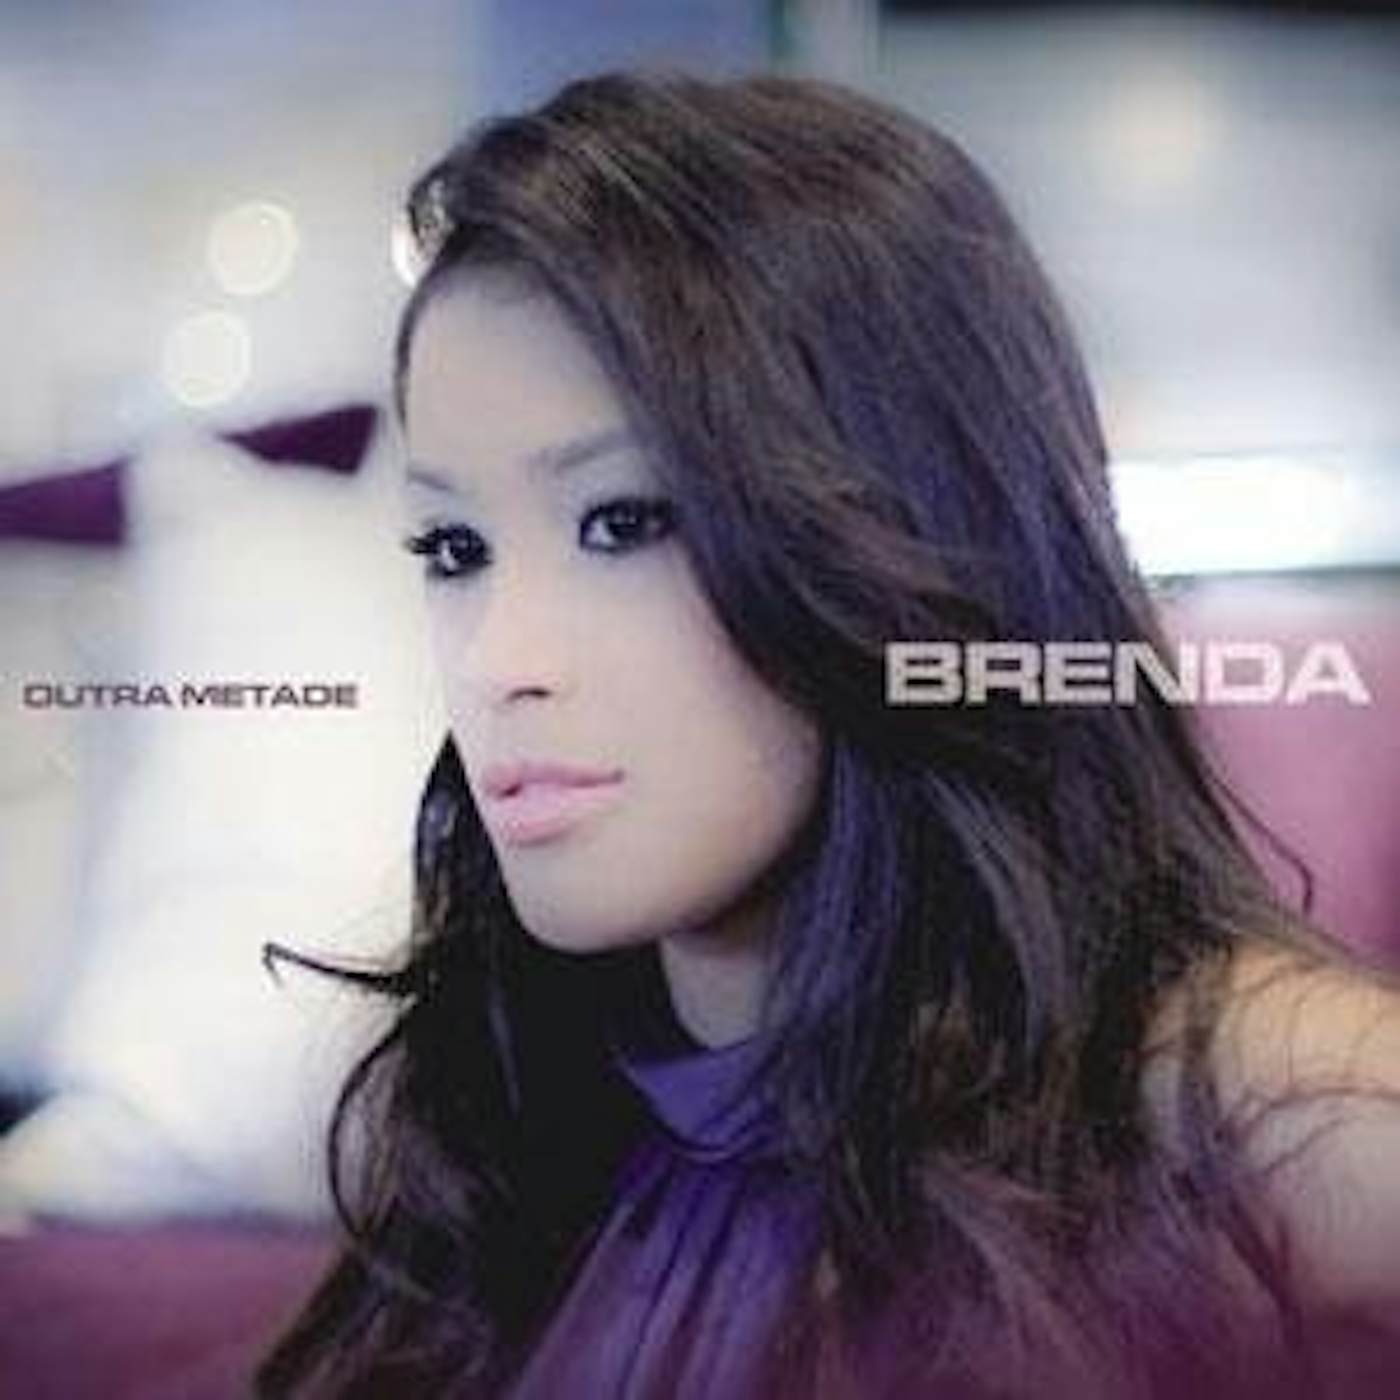 Brenda OUTRA METADE CD